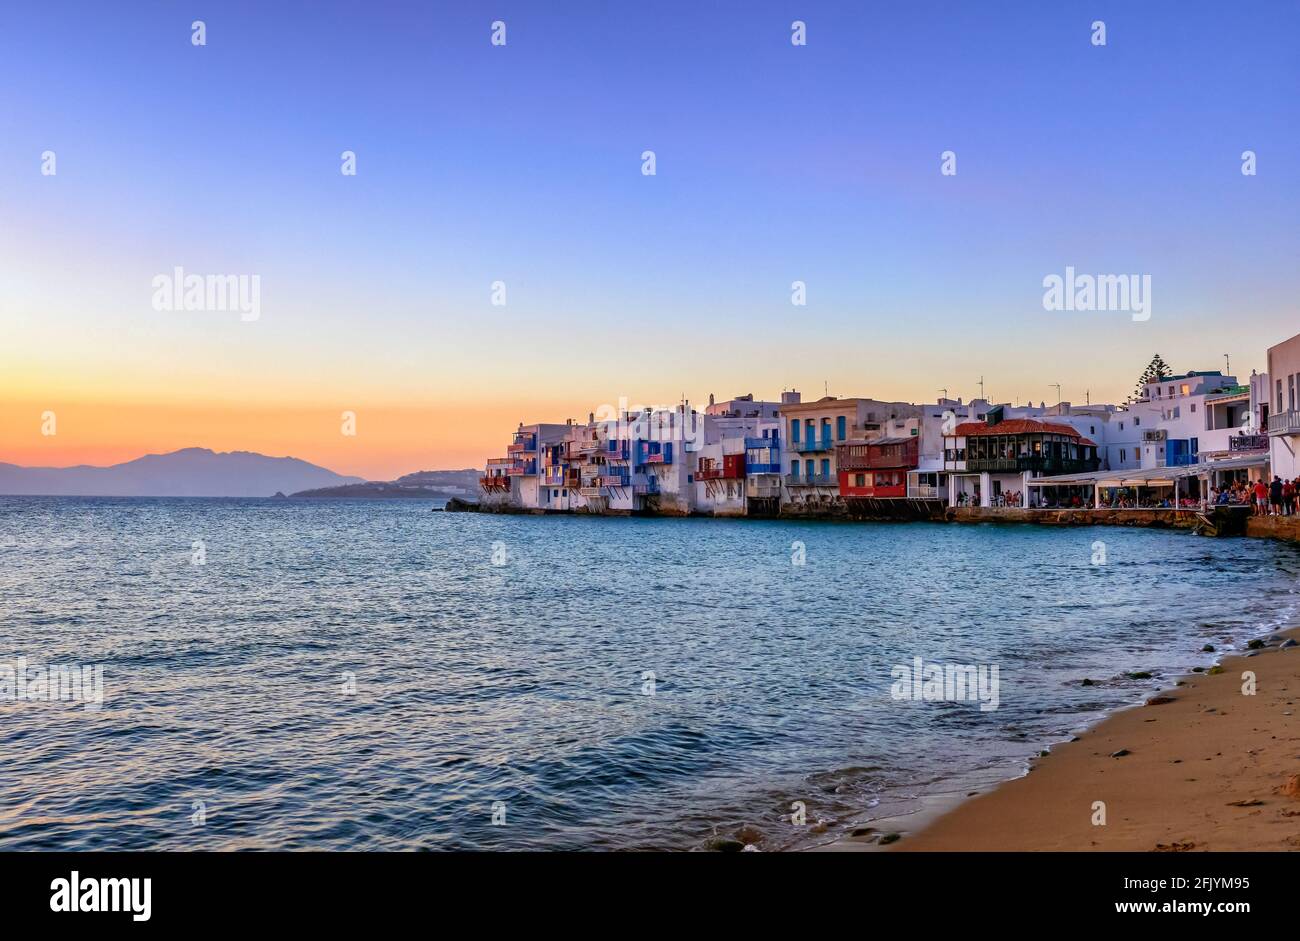 Wunderschöne Sonnenuntergangsansicht von Little Venice, Mykonos, Griechenland. Romantisches Viertel mit Bars, Cafés, Restaurants in alten Fischerhäusern über den Wellen des Meeres Stockfoto